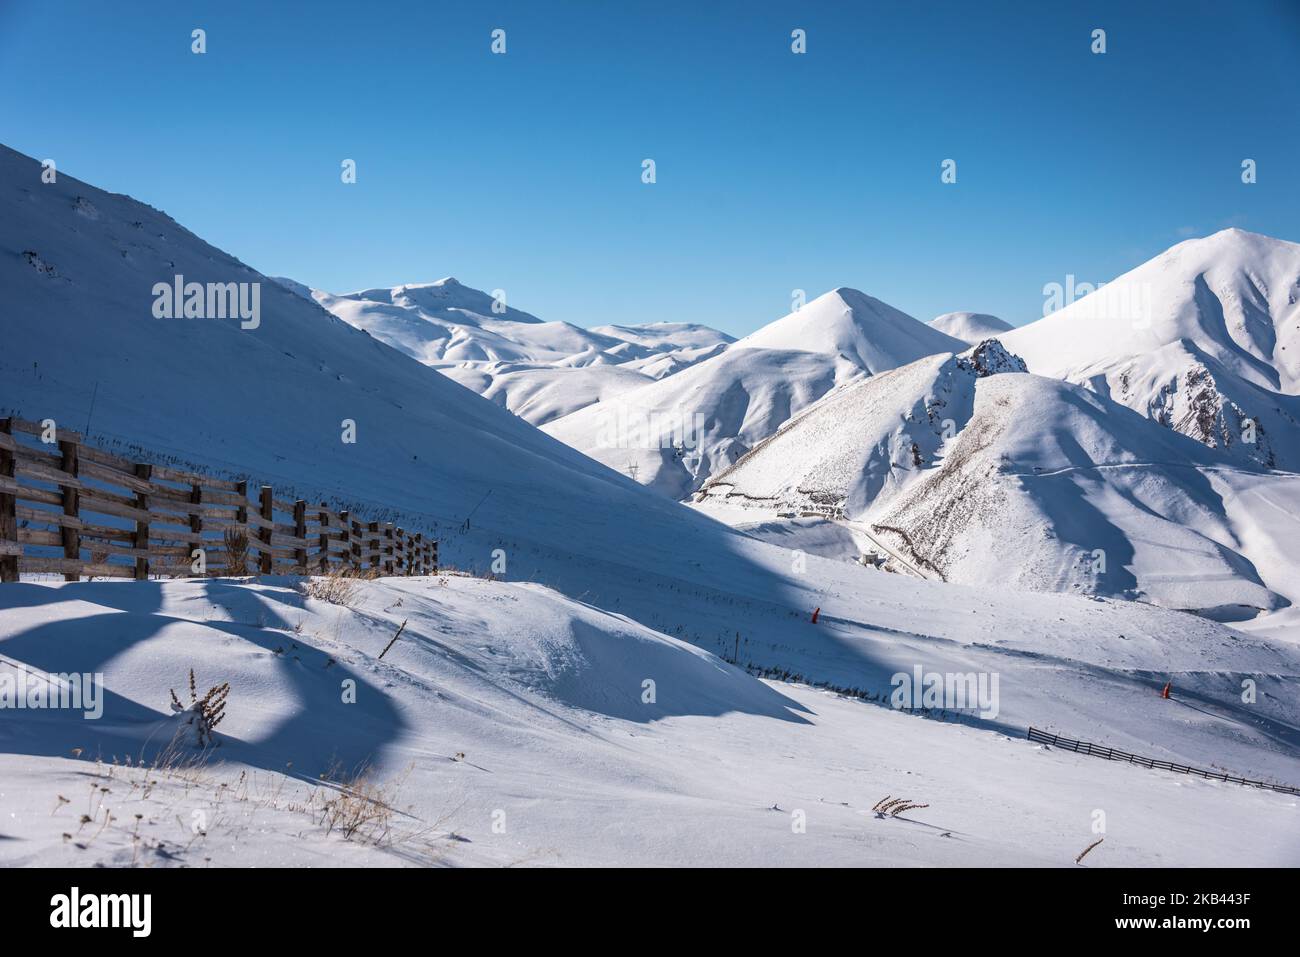 Am 9. Dezember 2018 locken die schneebedeckten Berge in der Nähe des Skigebiets Ejder 3200 Palandoken Wintersportler nach Erzurum, einem beliebten Ski- und Snowboardziel im östlichen Anatolien der Türkei. (Foto von Diego Cupolo/NurPhoto) Stockfoto